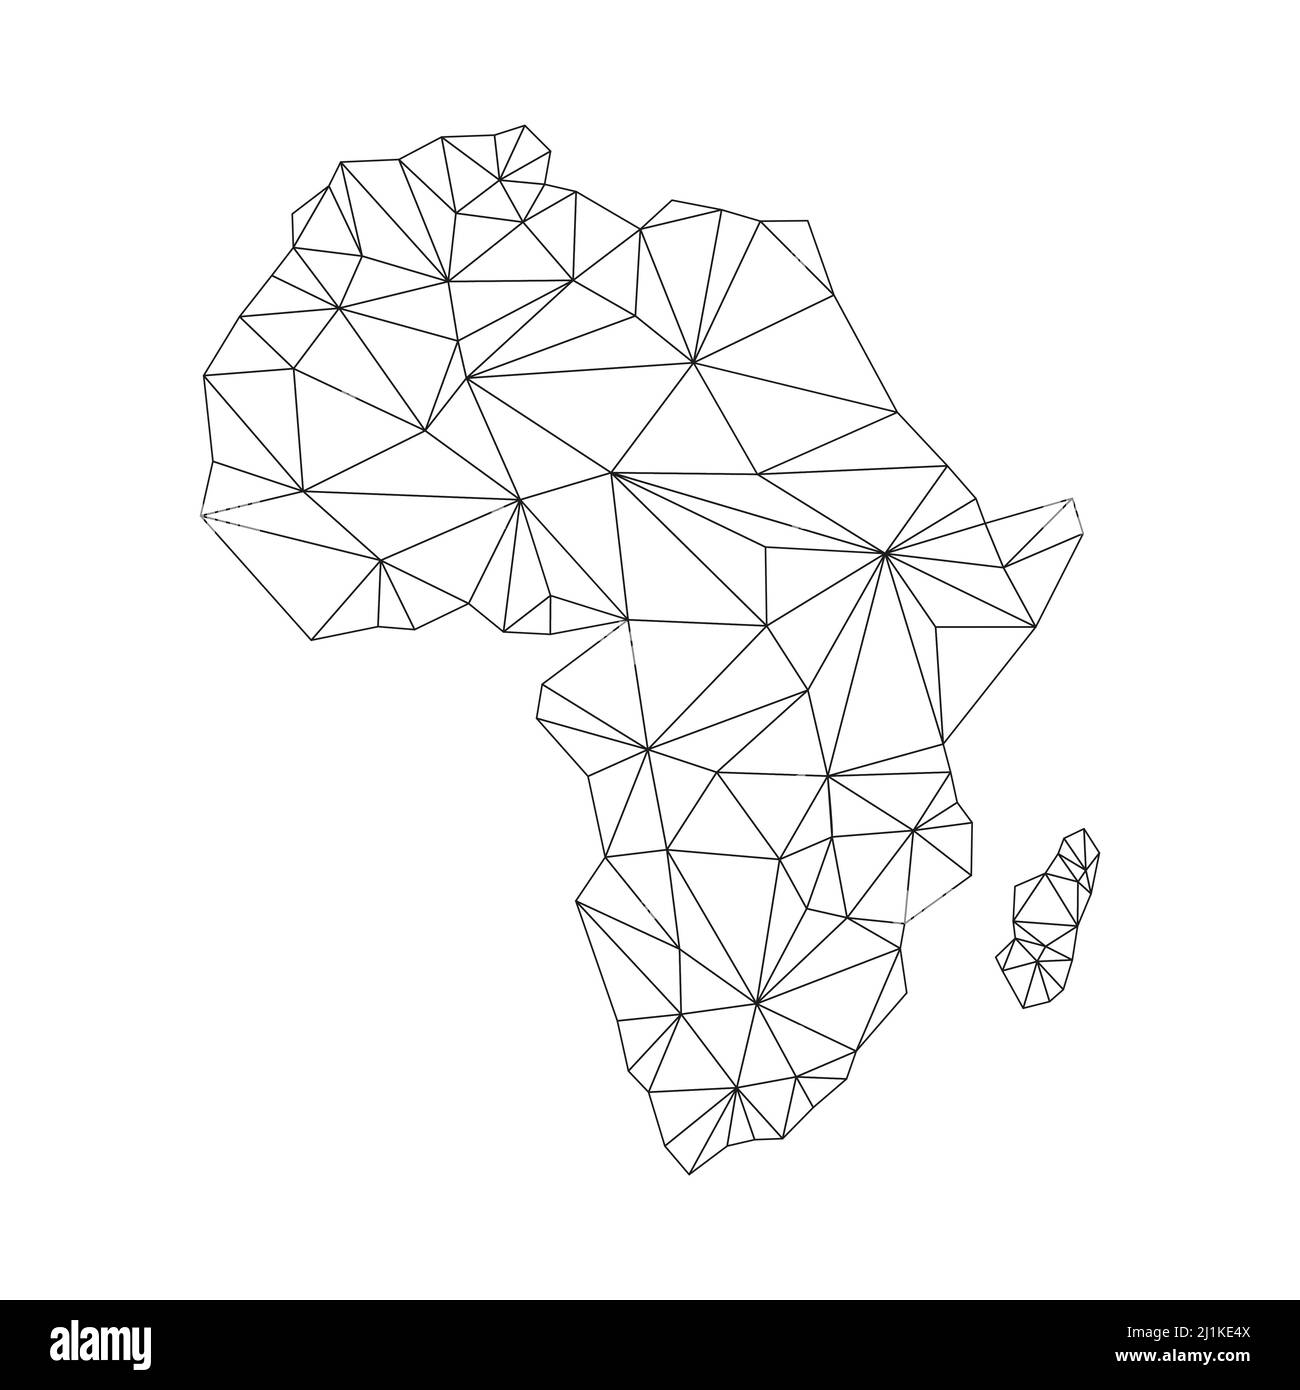 Africa Mappa Con Forme Poligonali Mappa Del Mondo Continente Lineare Mappa Del Continente 8210